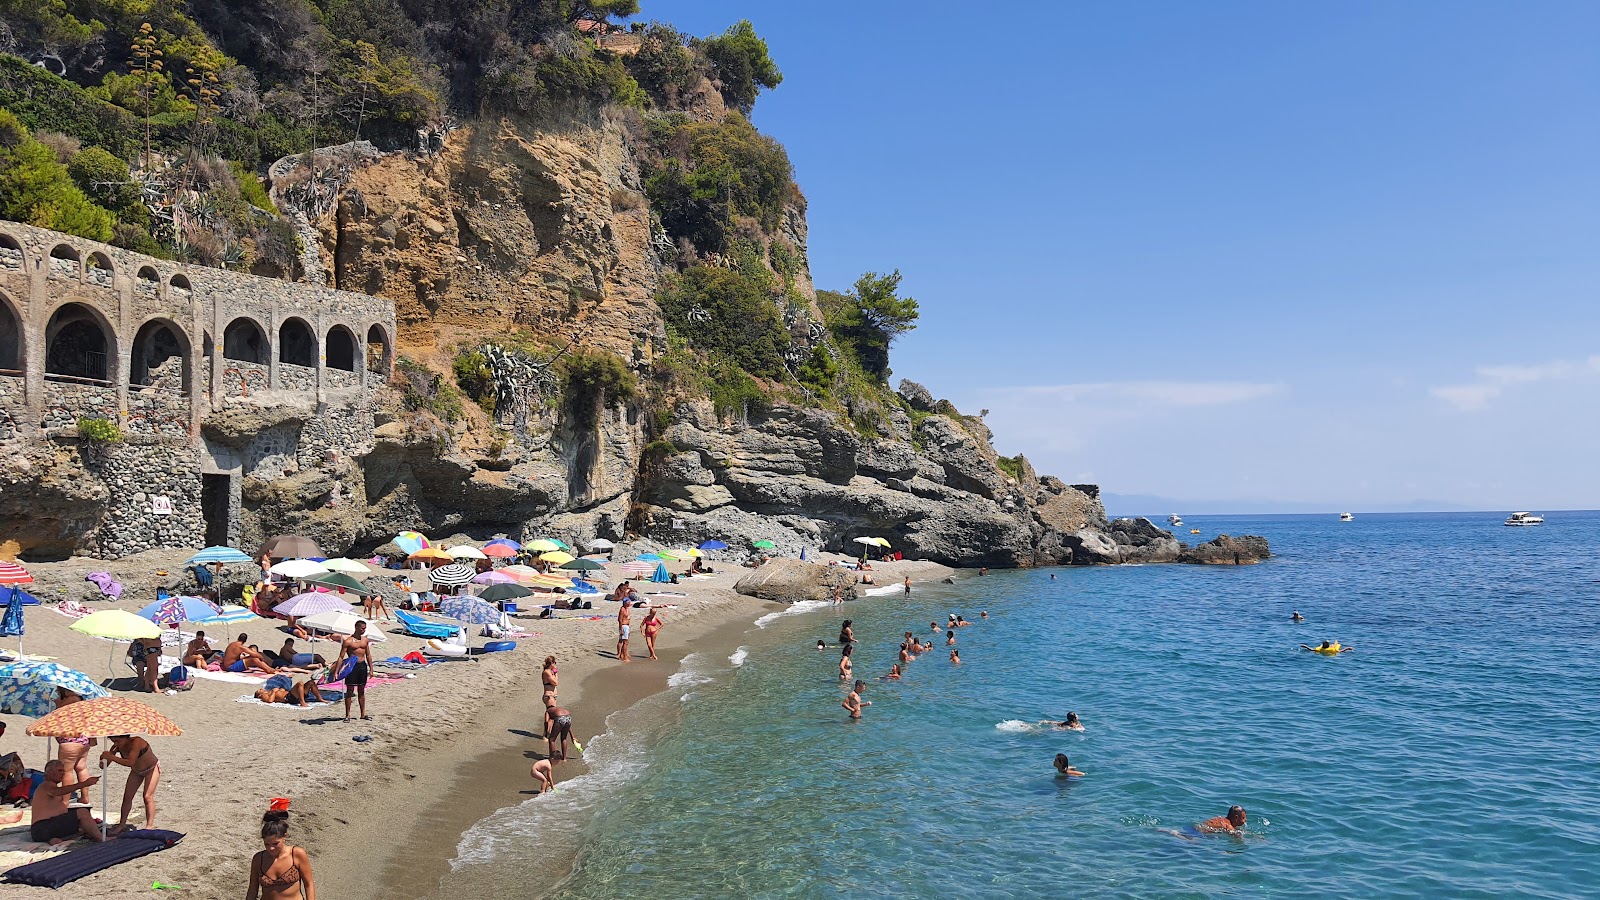 Valokuva L'Ultima Spiaggiaista. sisältäen tilava ranta